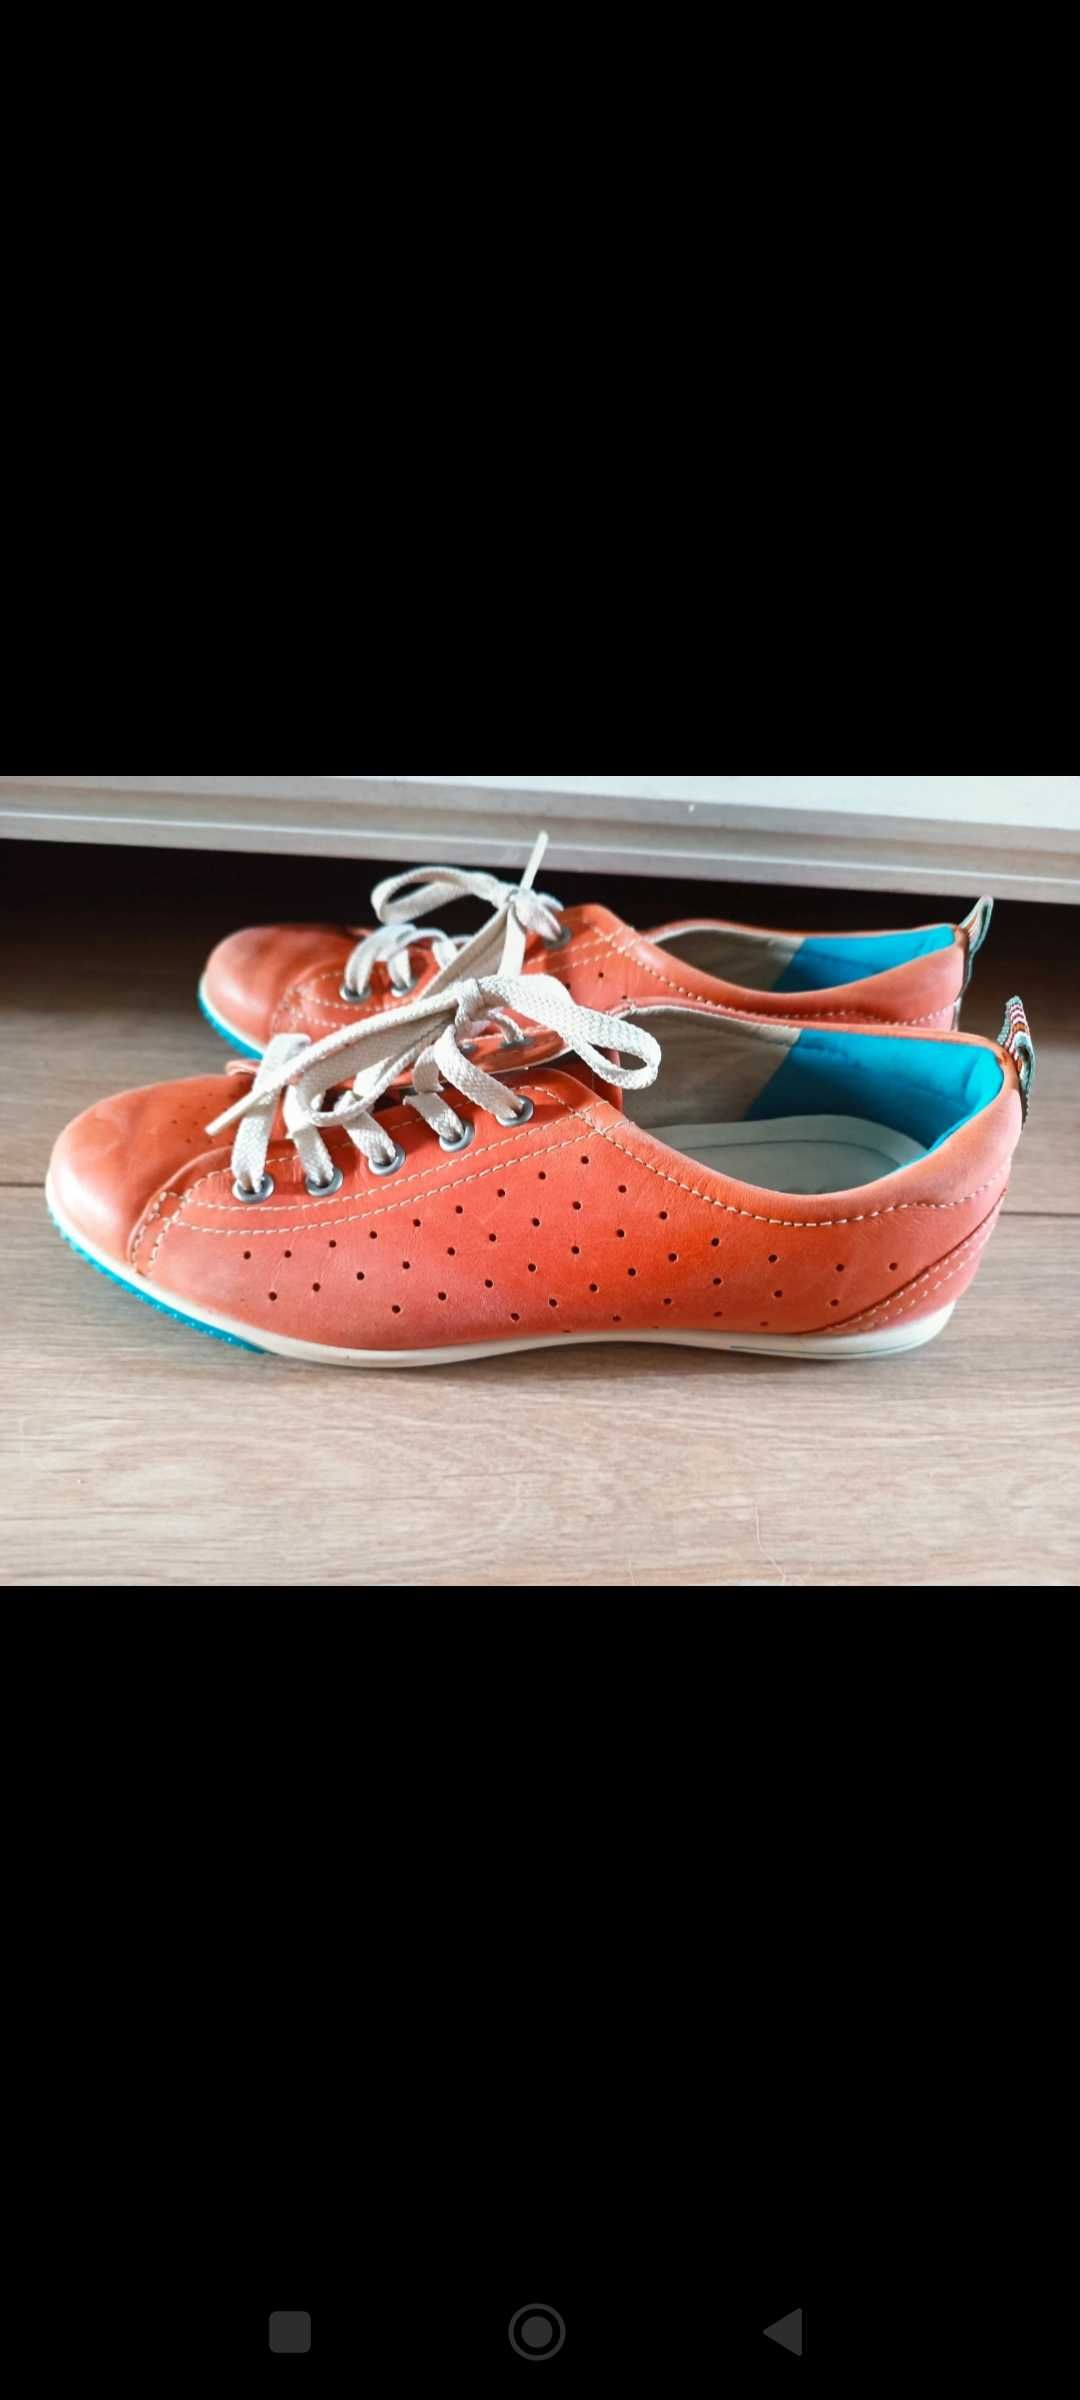 Buty damskie Eco 38 skórzane pomarańczowe